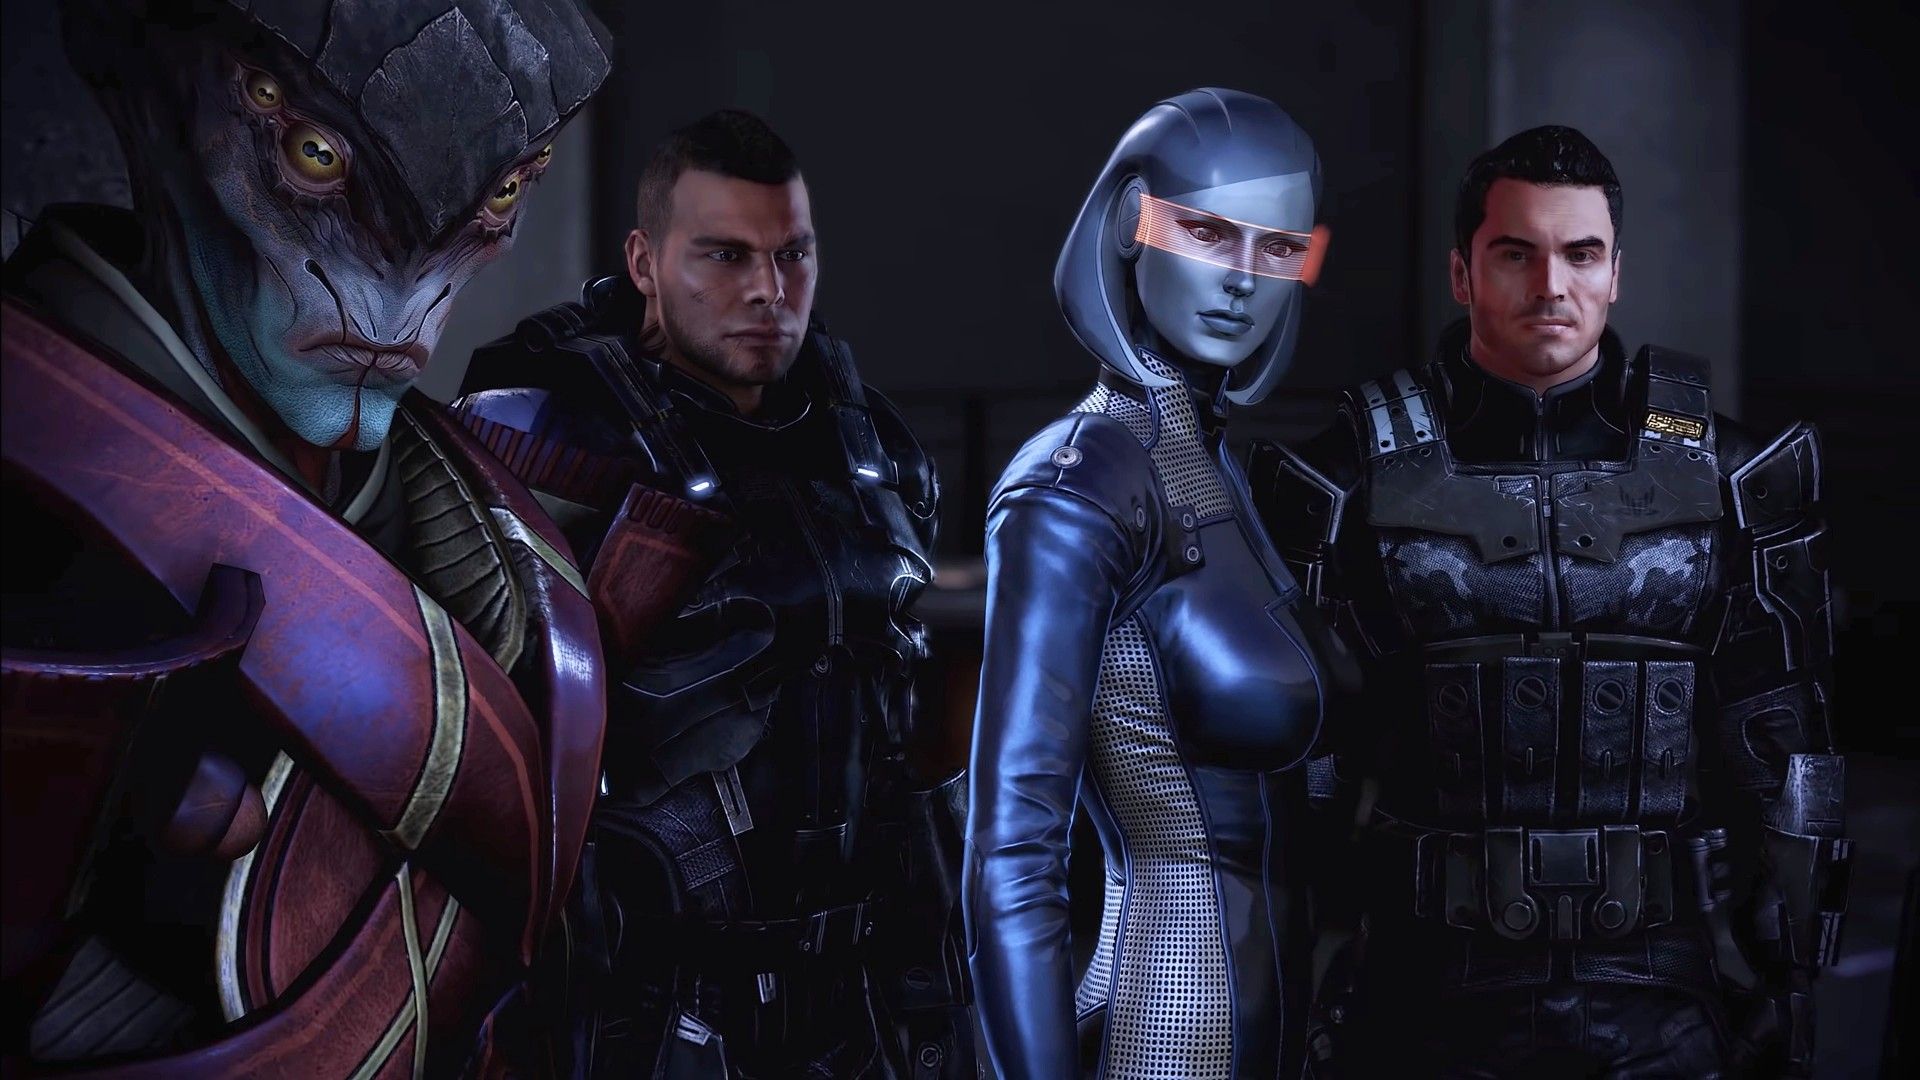 Mass Effect™ издание Legendary download the new